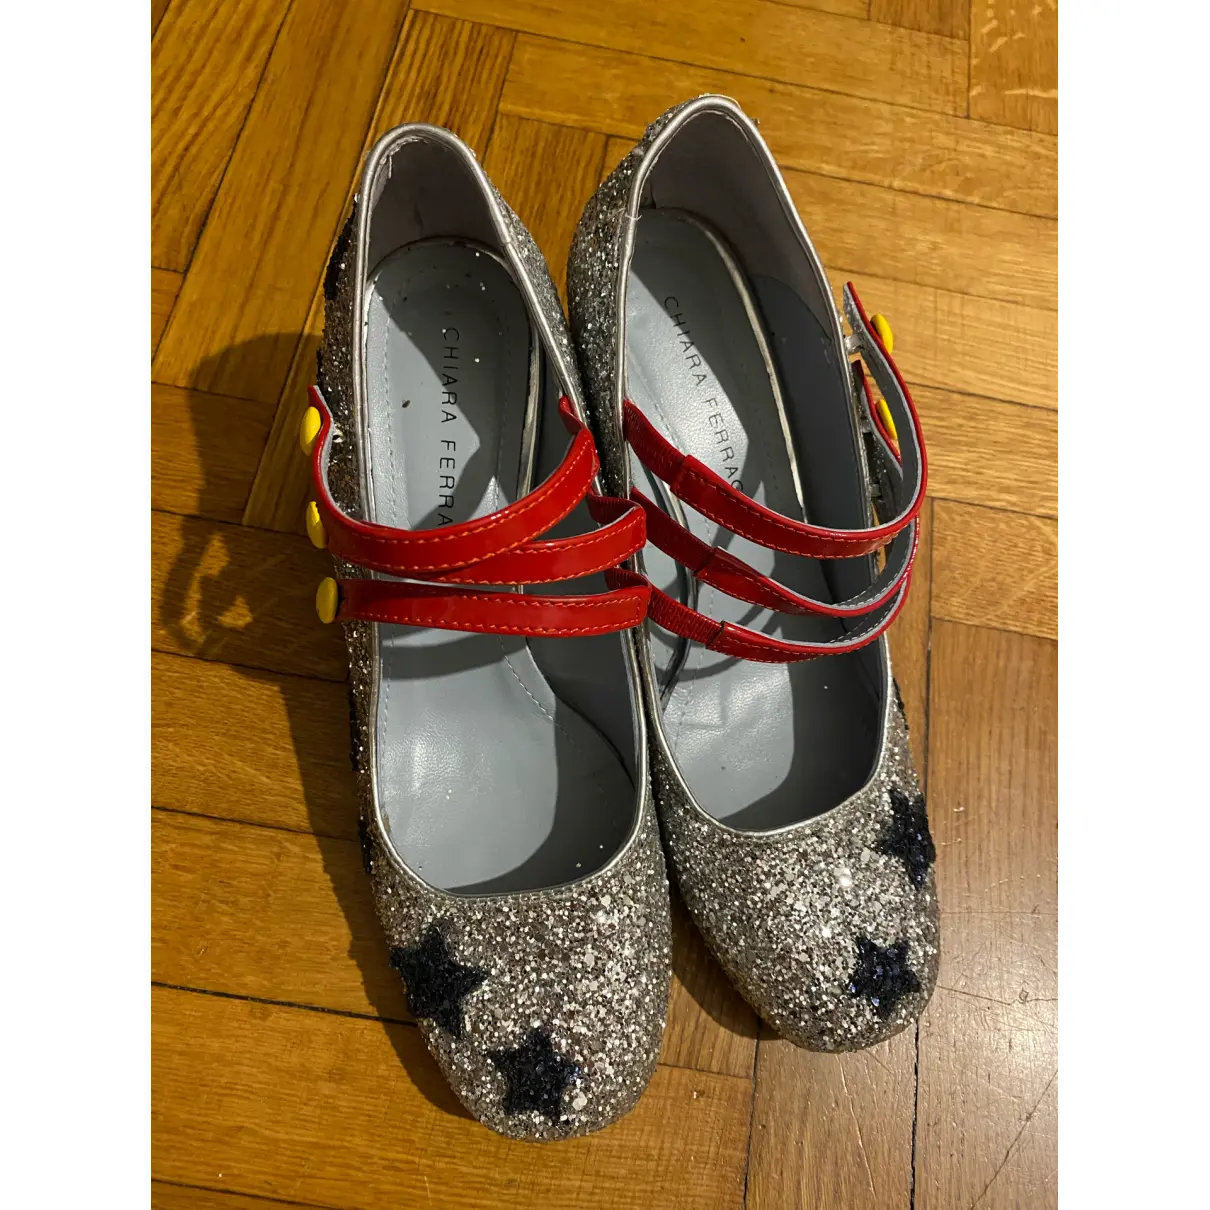 Buy Chiara Ferragni Glitter heels online